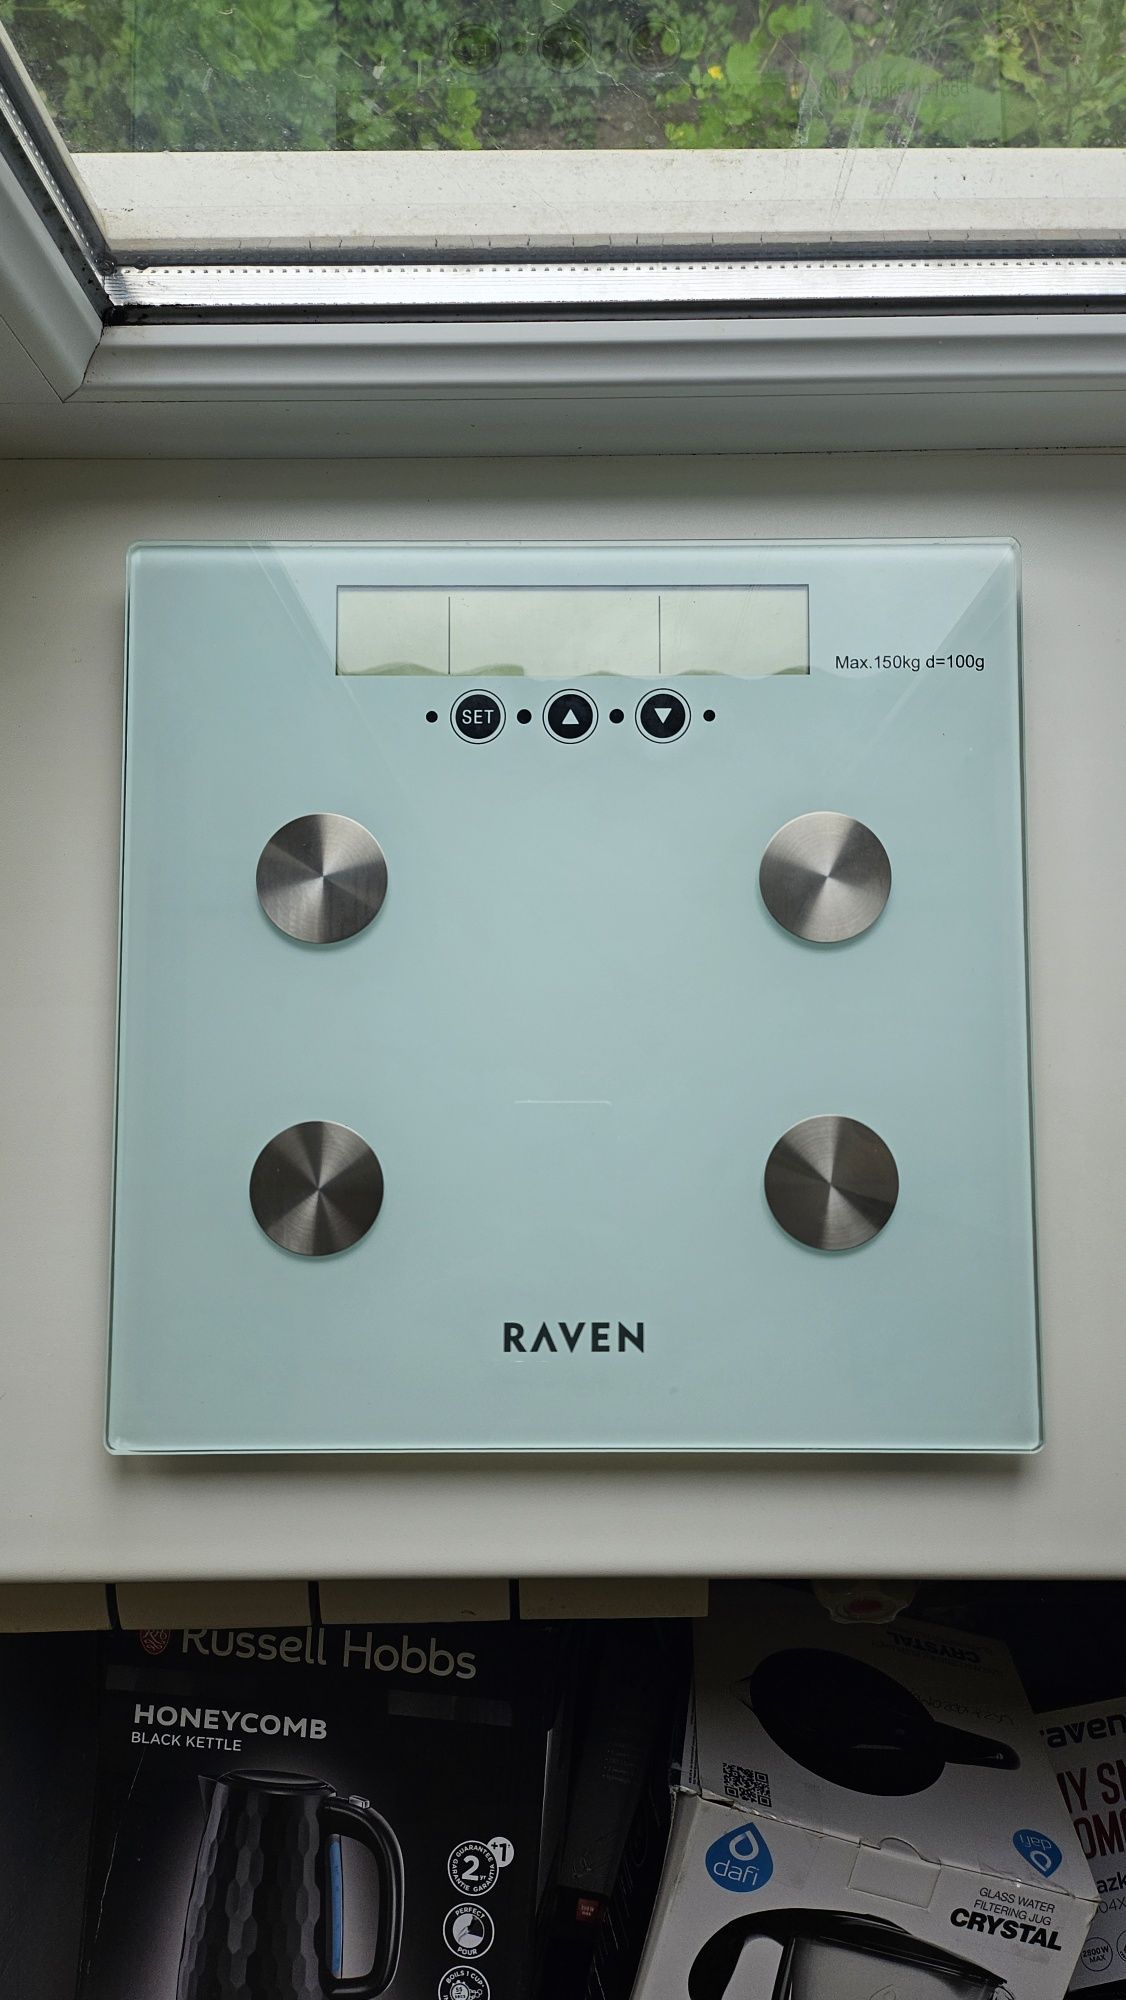 Електронні підлогові ваги RAVEN EW001N, RAVEN EW003

•